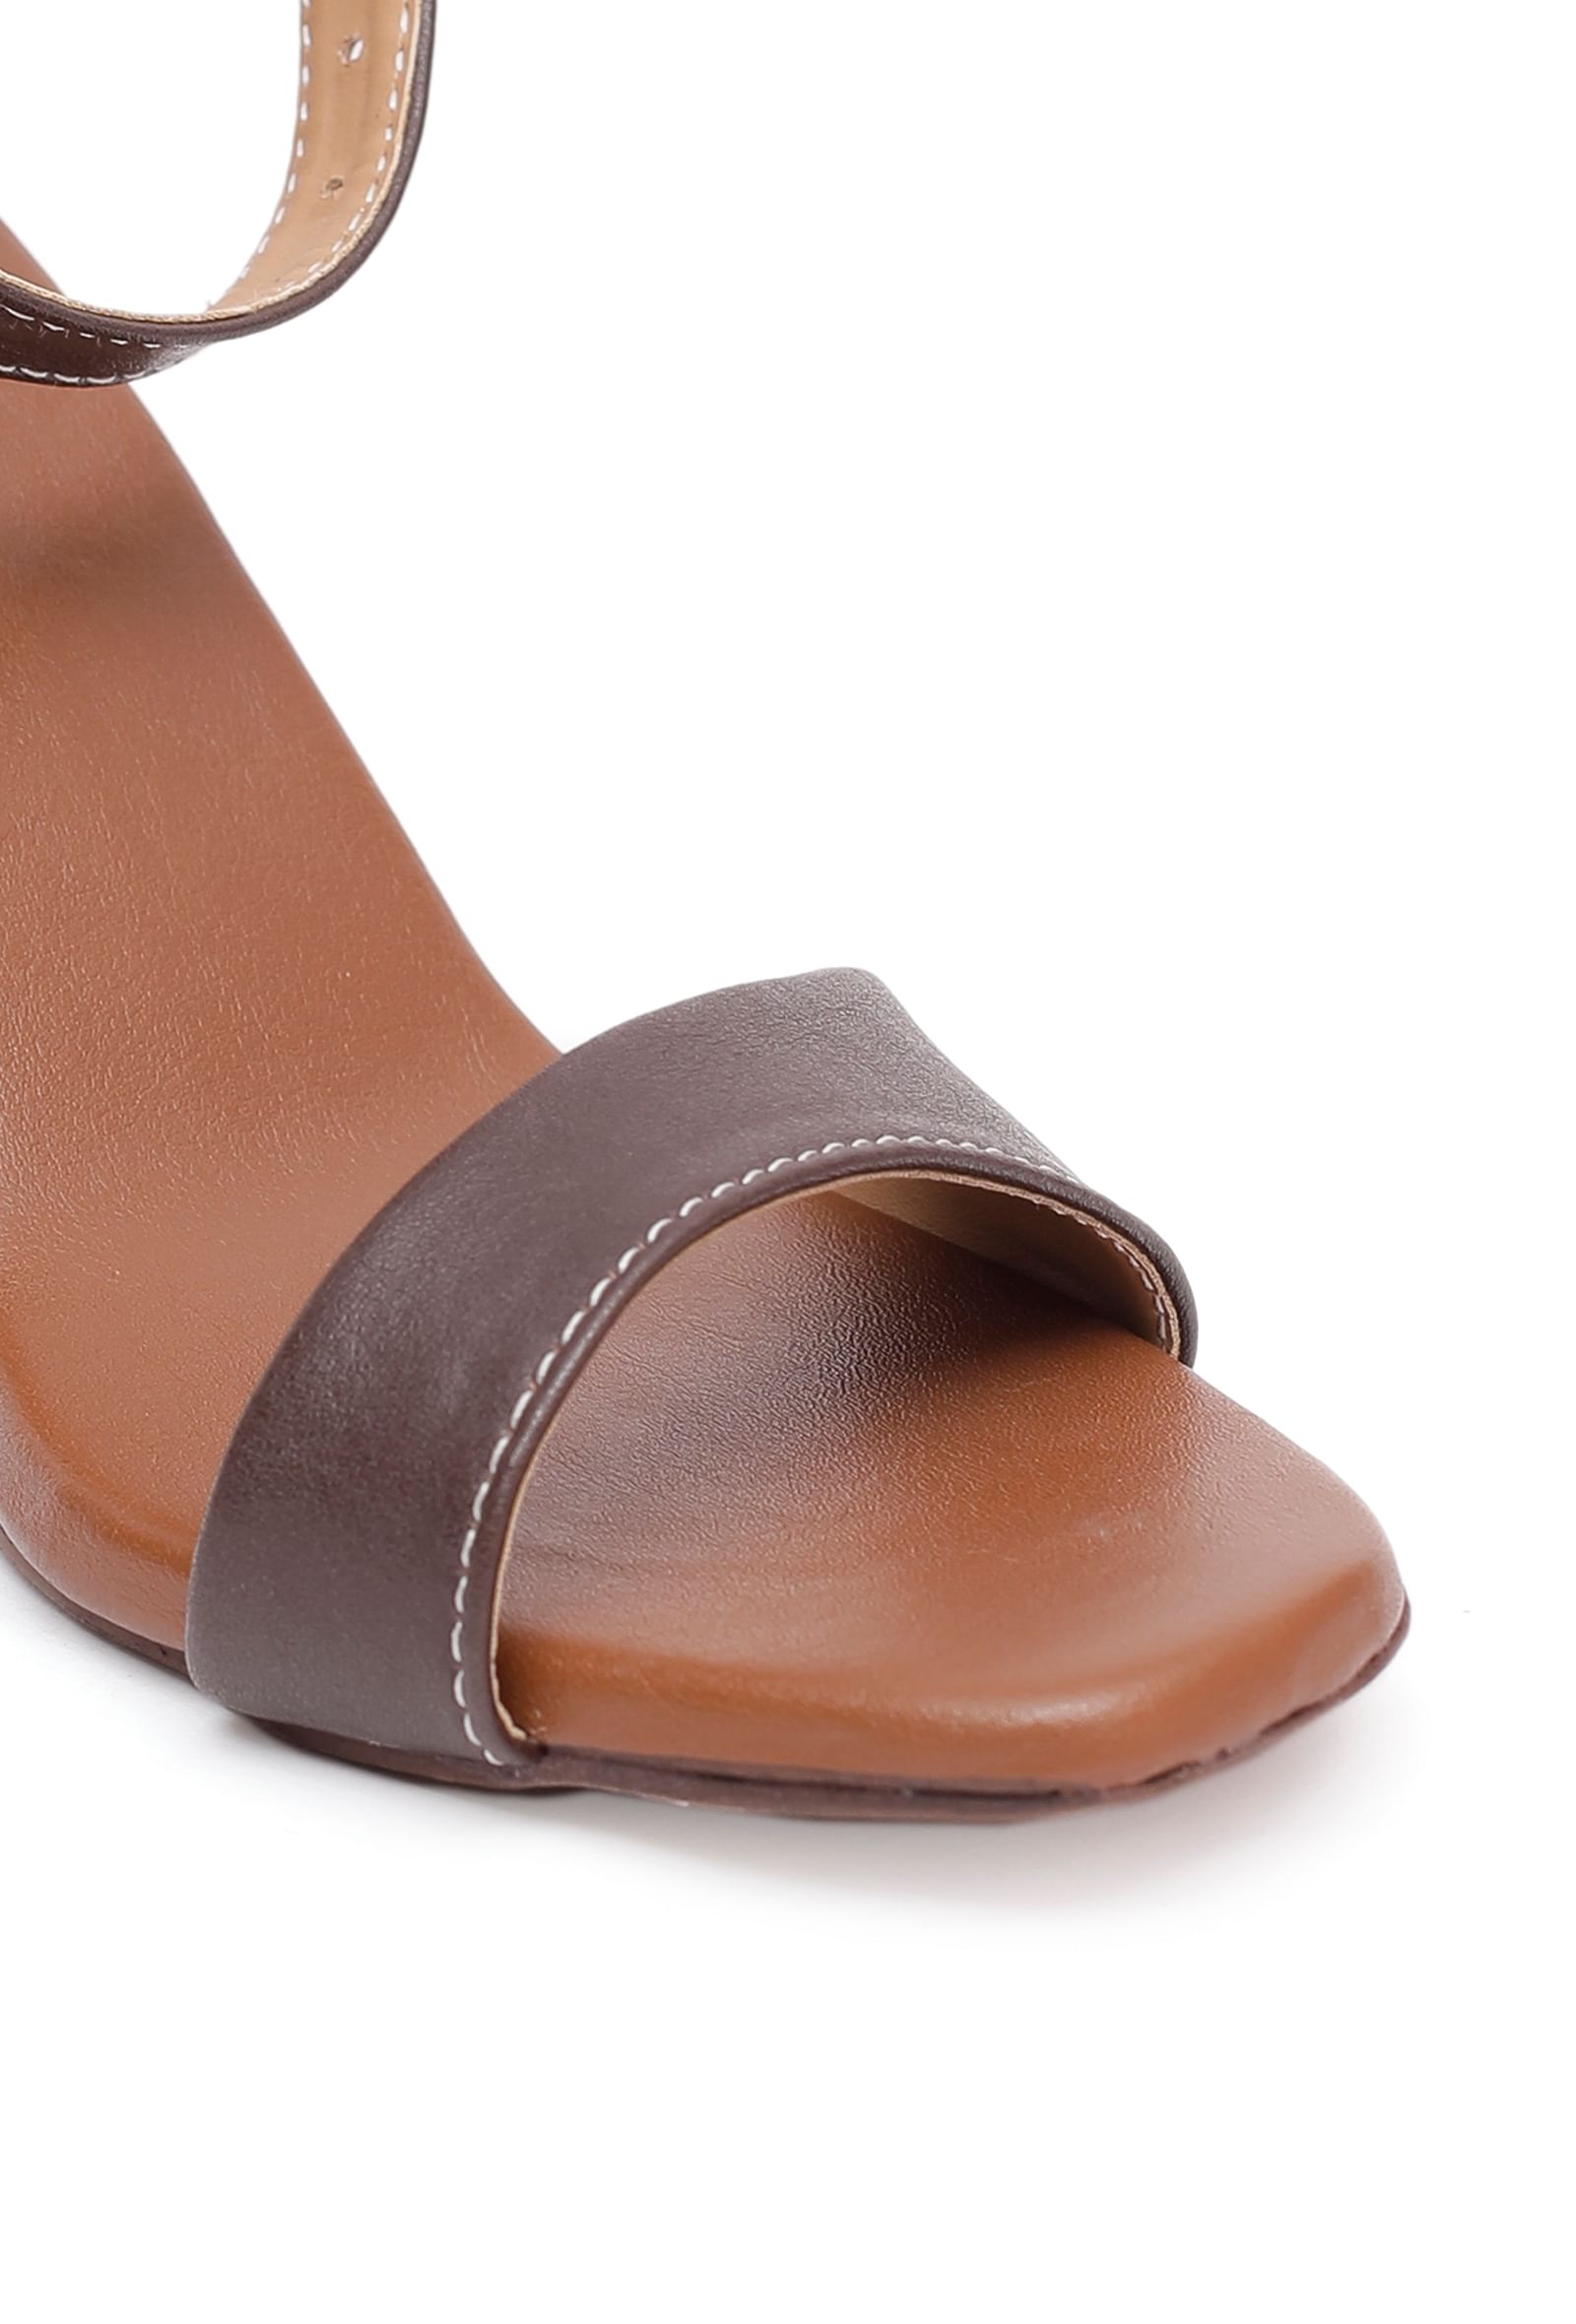 Leather Ankle Strap Stiletto Open Toe Heels | SOSANDAR | M&S